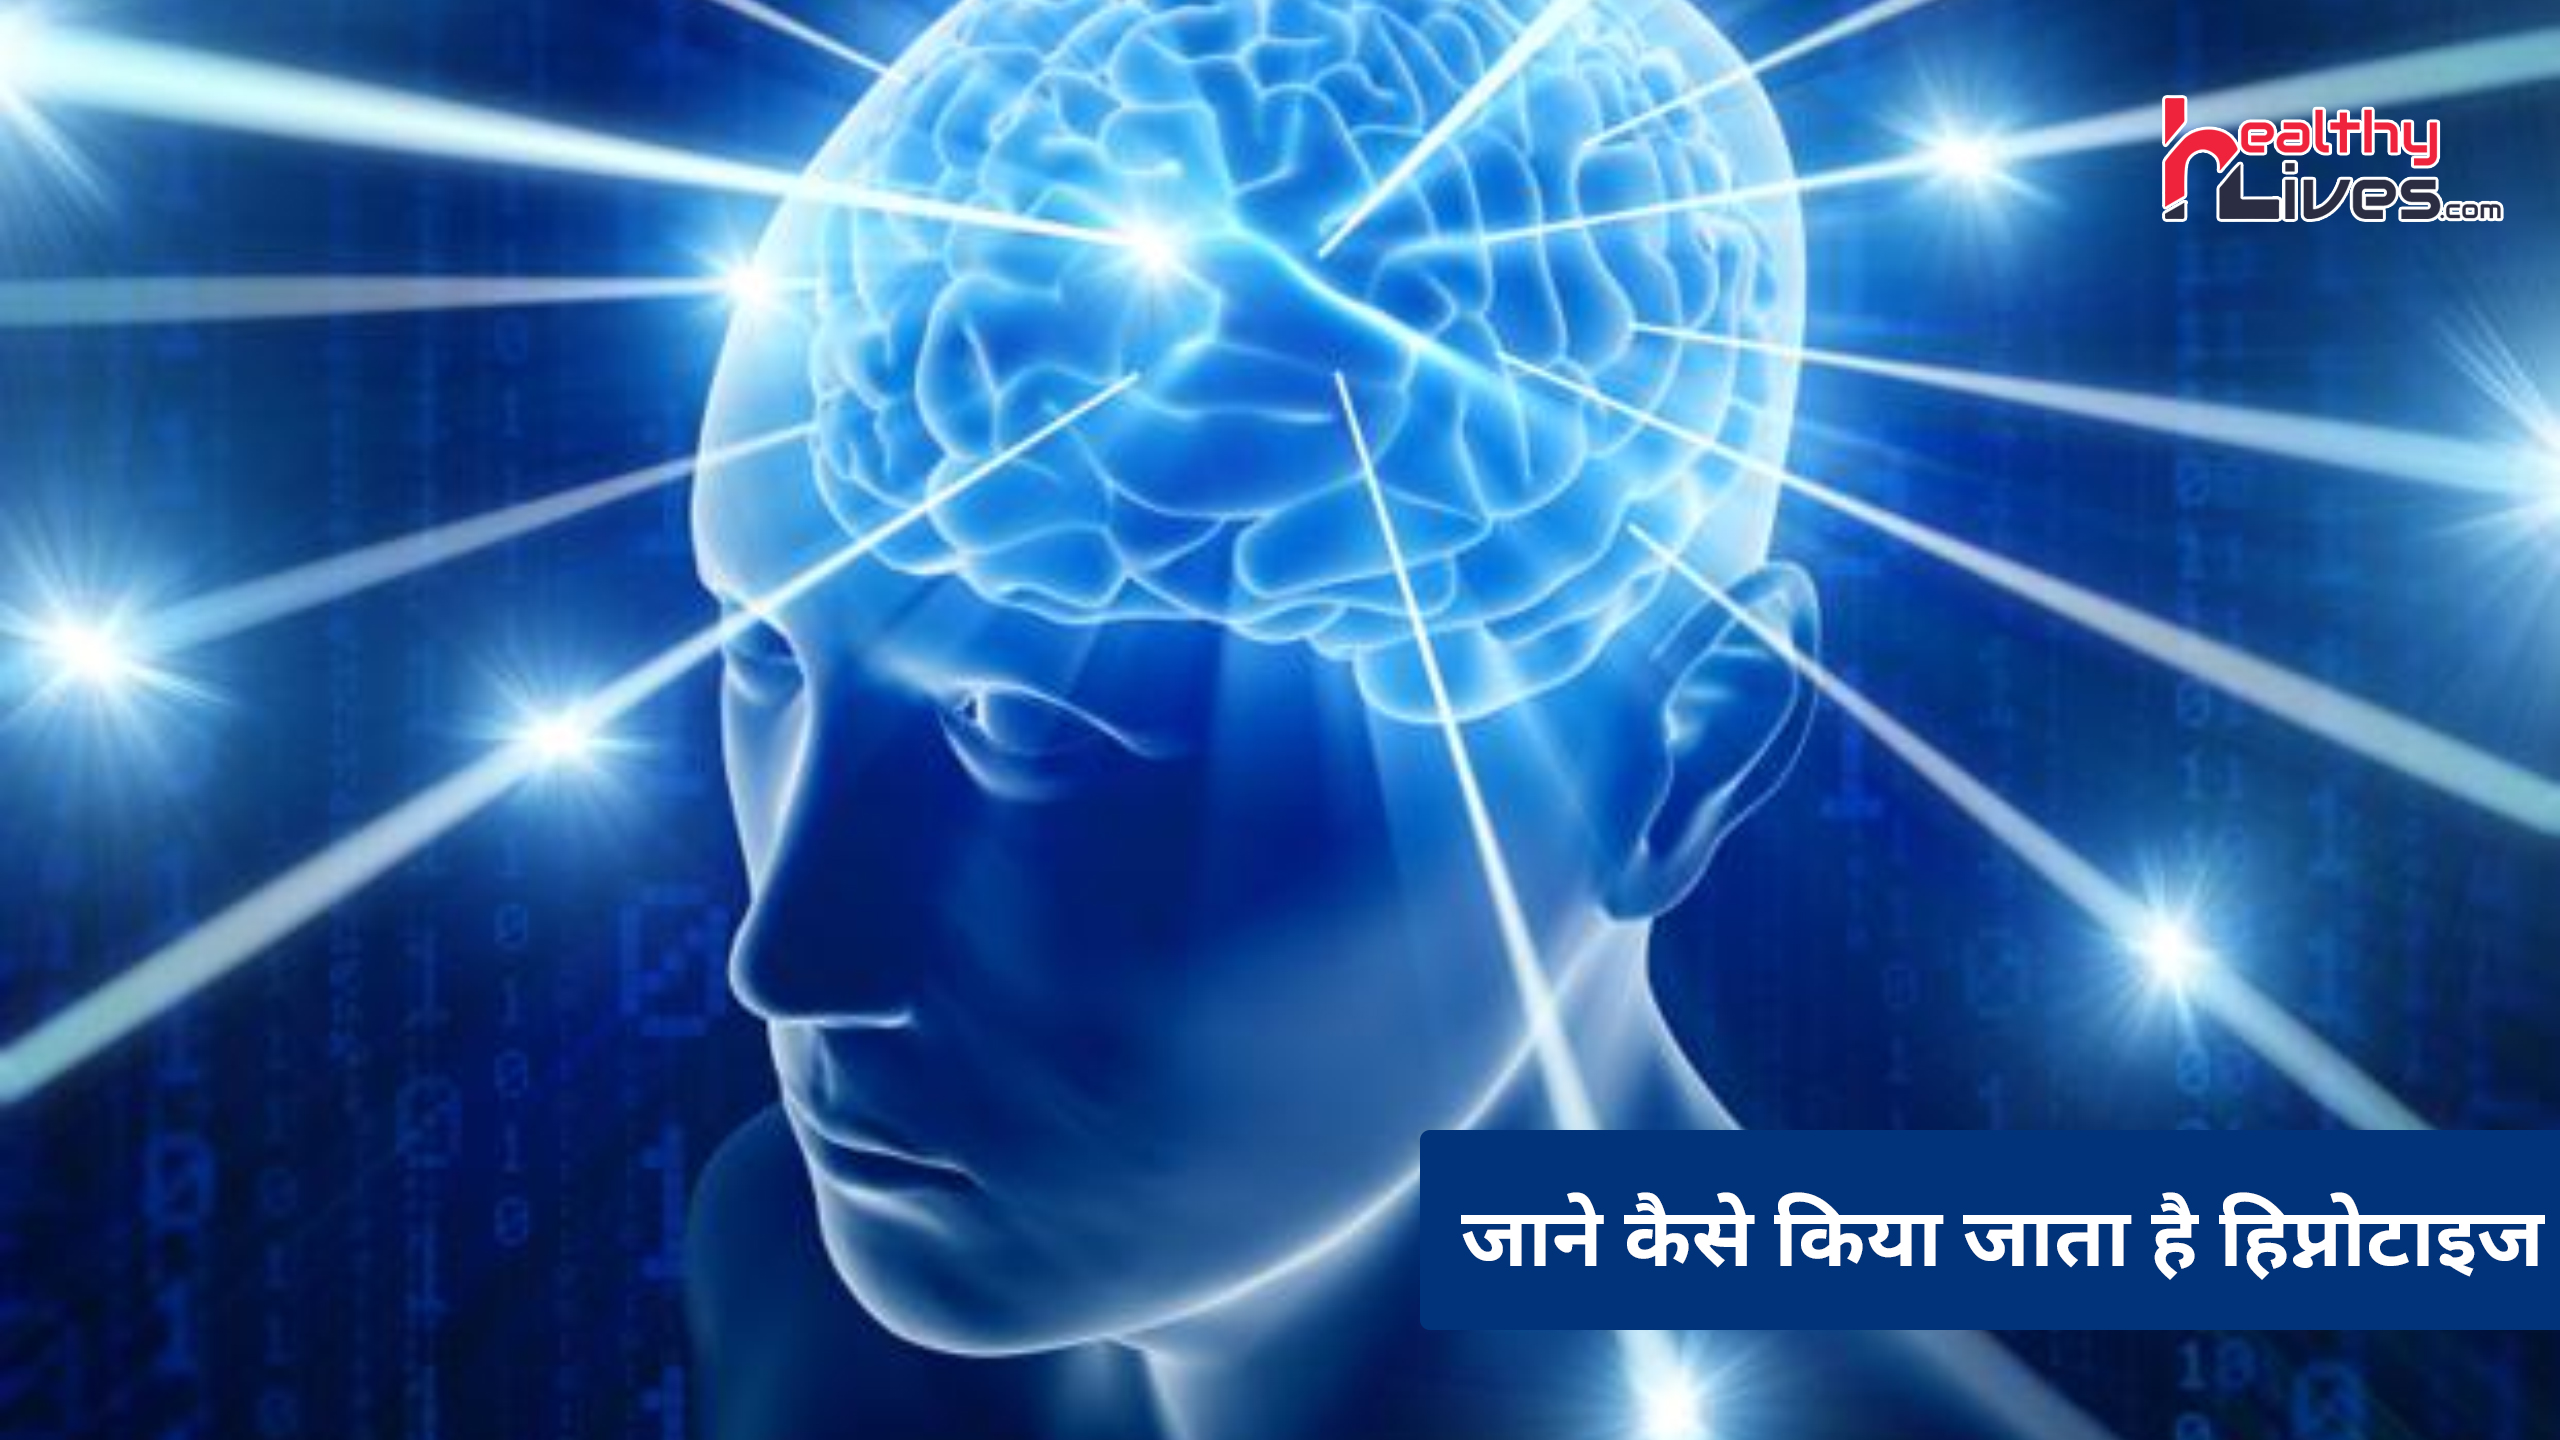 Hypnotism In Hindi: क्या सम्मोहन विद्या से कर सकते हैं किसी भी व्यक्ति को अपने वश में?